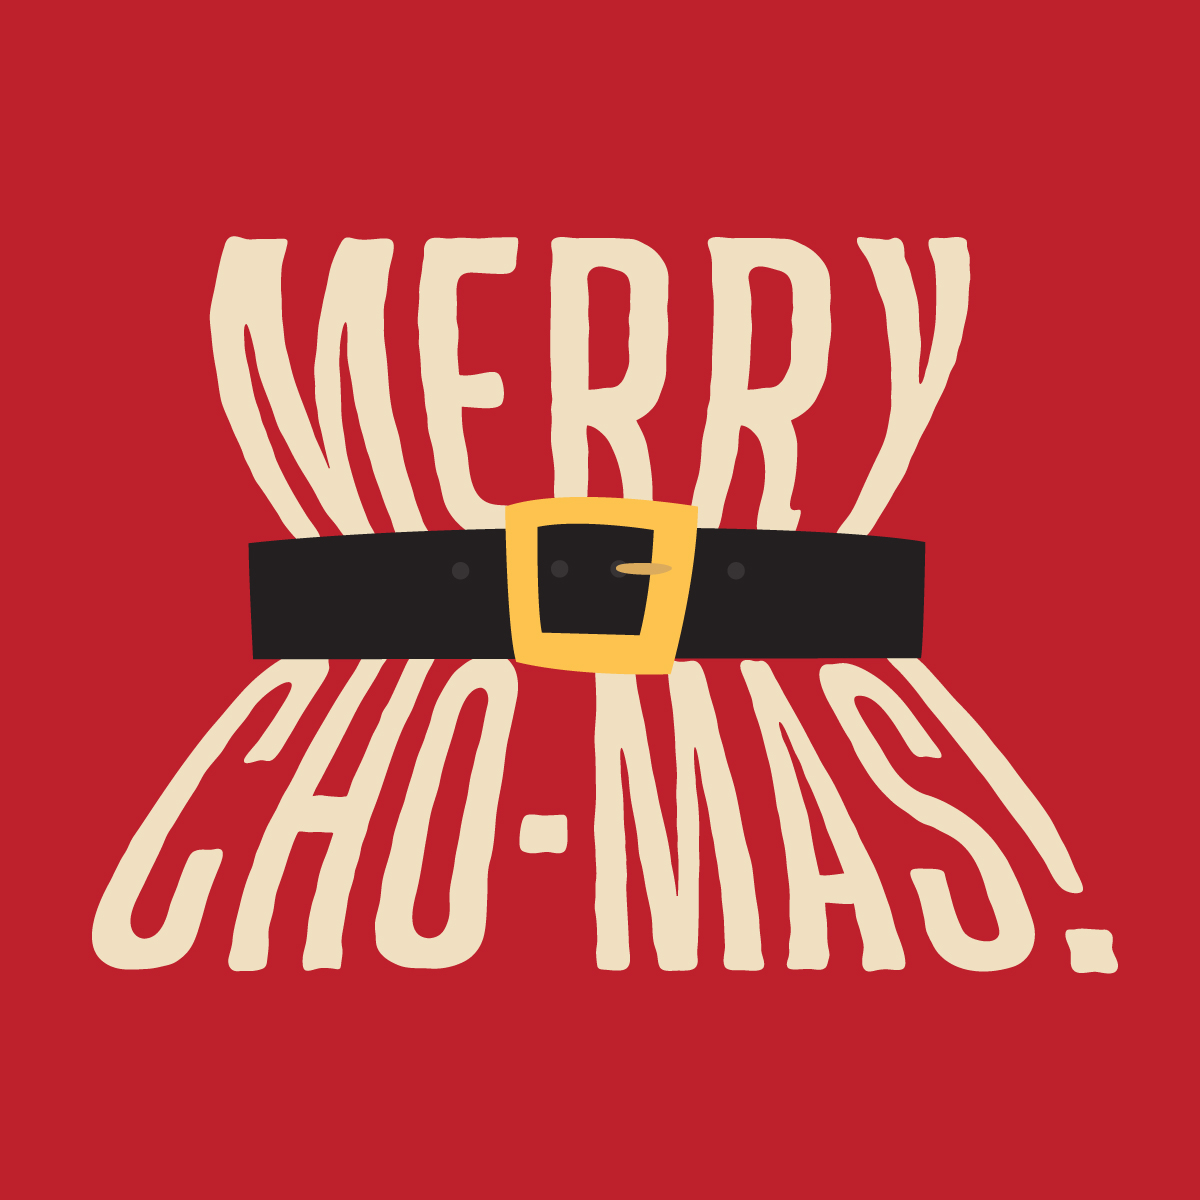 Chobani Australia Christmas - Cheeky Christmas themed messaging and illustration